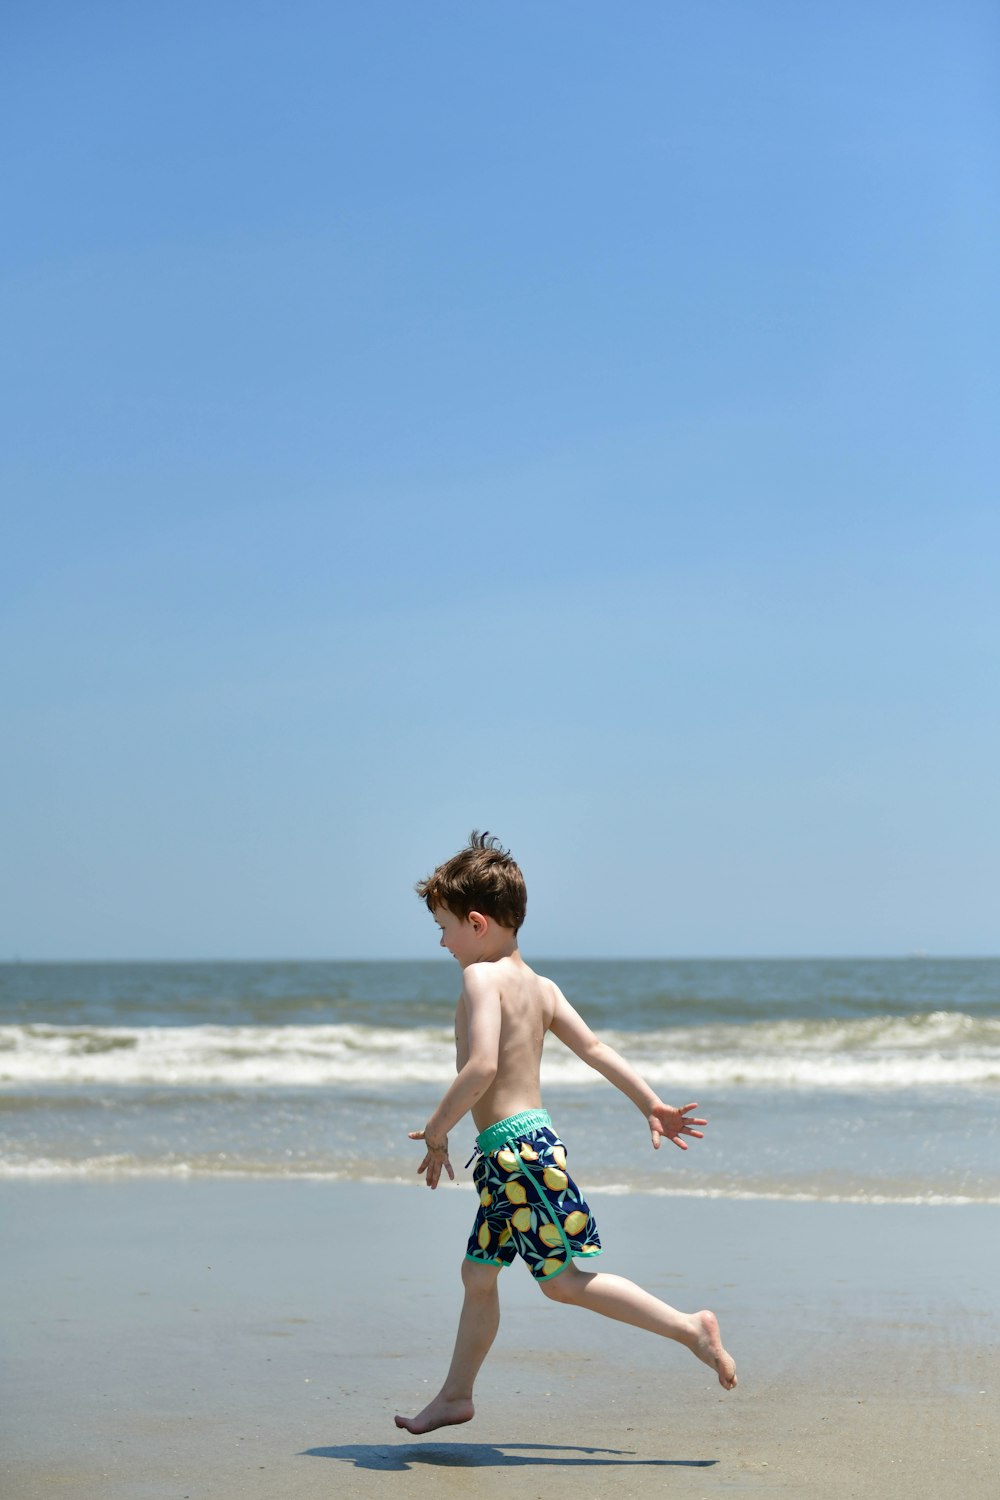 Un niño corriendo en la playa con un frisbee